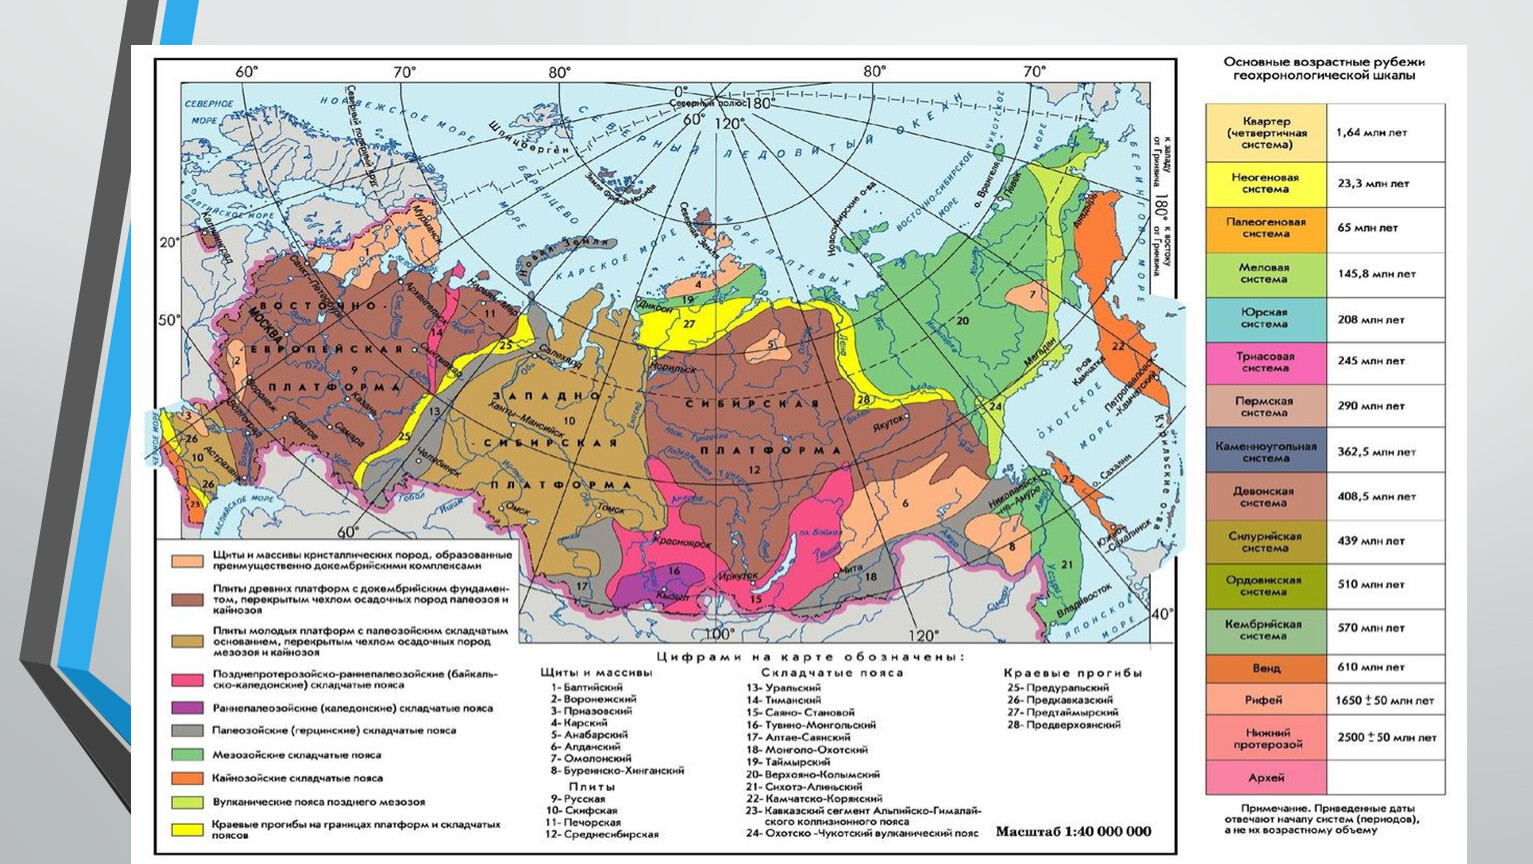 Геологическое строение рельеф и полезные ископаемые России